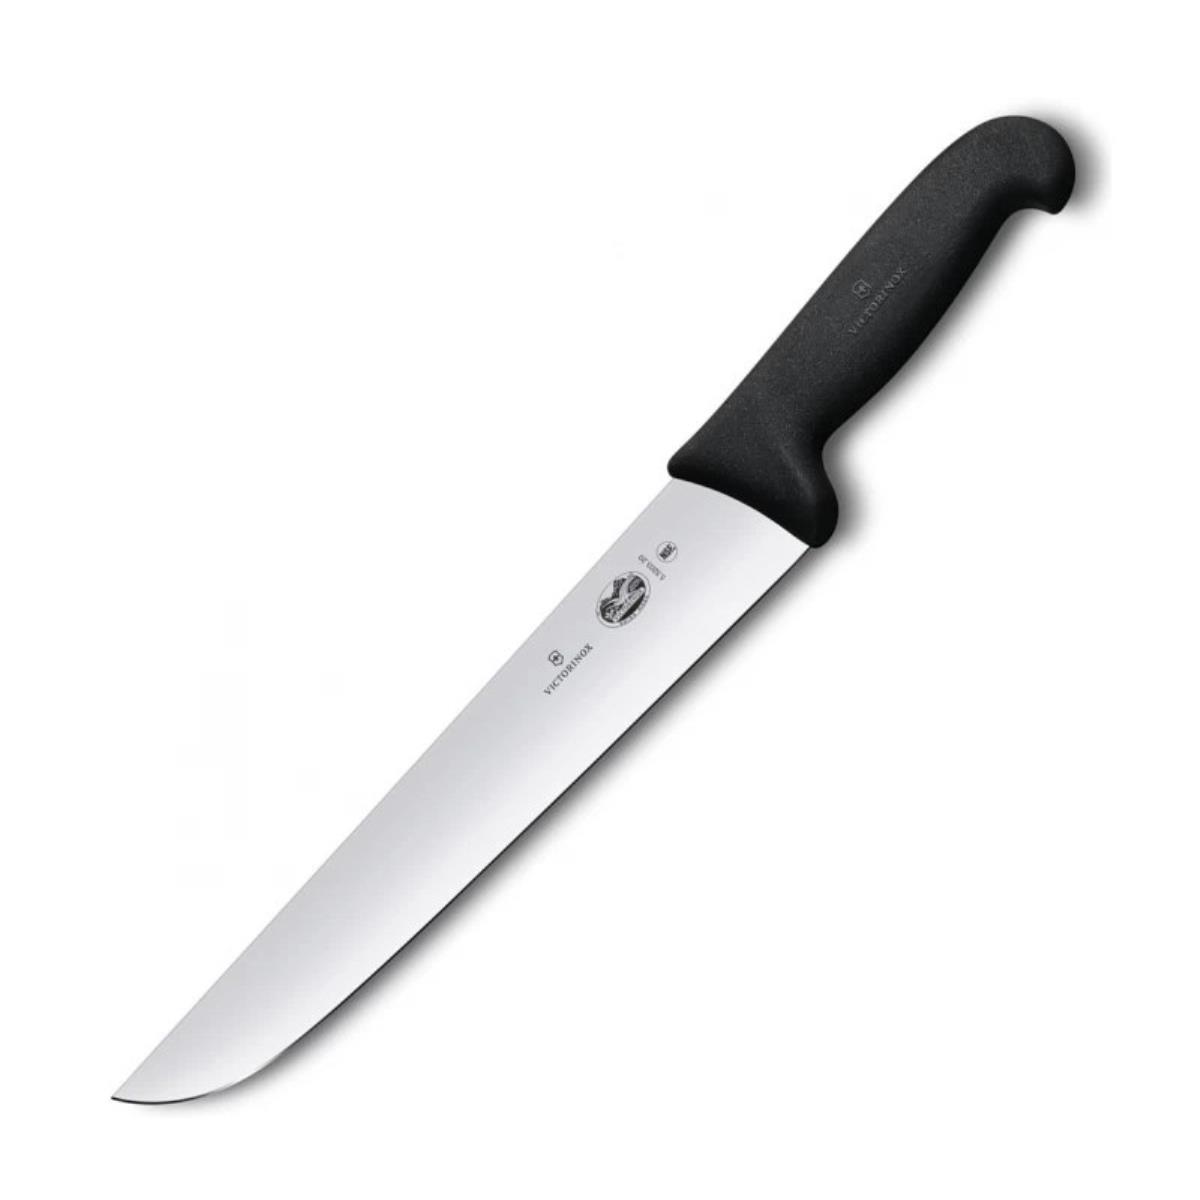 Нож 5.5203.20 VICTORINOX victorinox 4 0523 31 кожаный для ножей 111мм до 3 уровней с поворотным механизмом